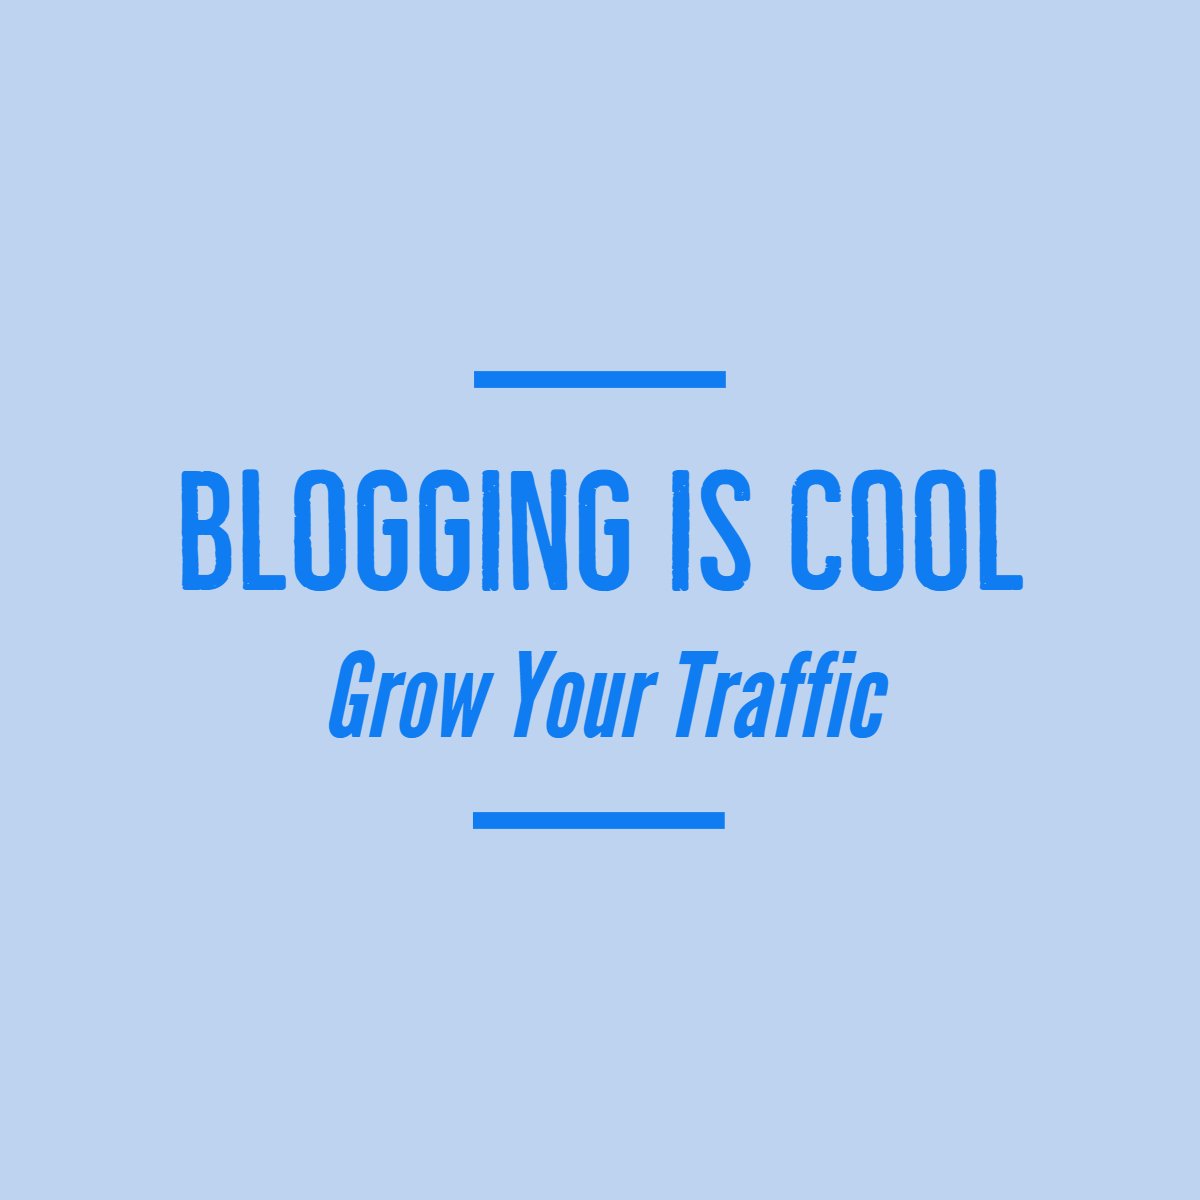 bloggingiscool.com how to get Google to crawl your blog